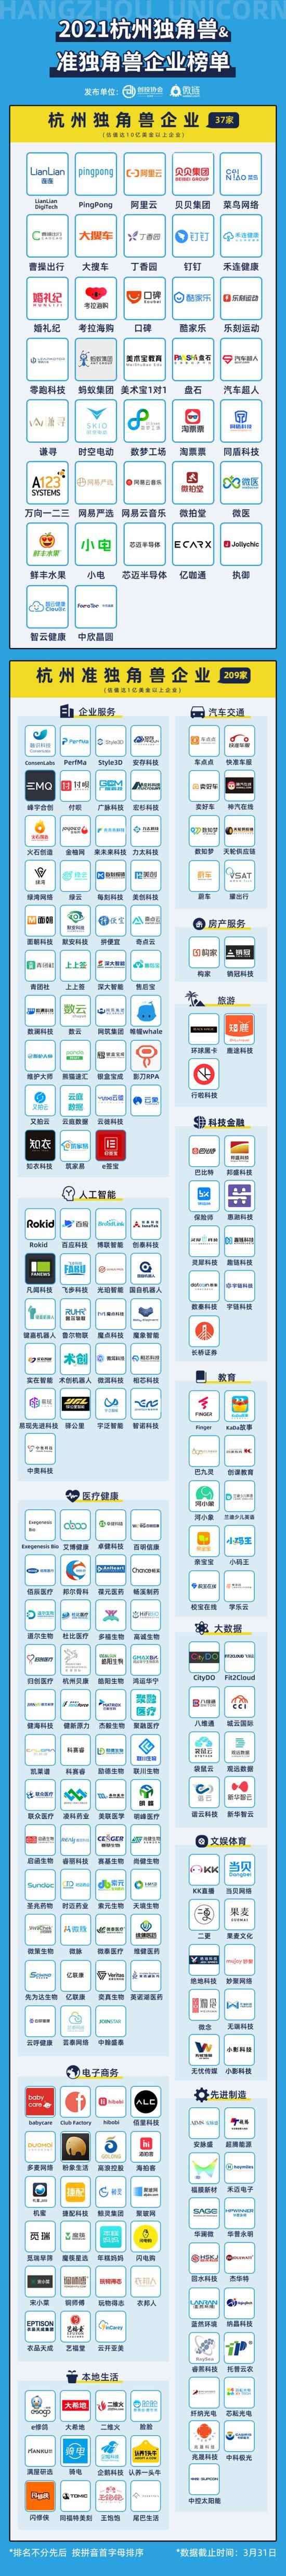 2021杭州独角兽&准独角兽企业榜单发布阿里云等上榜